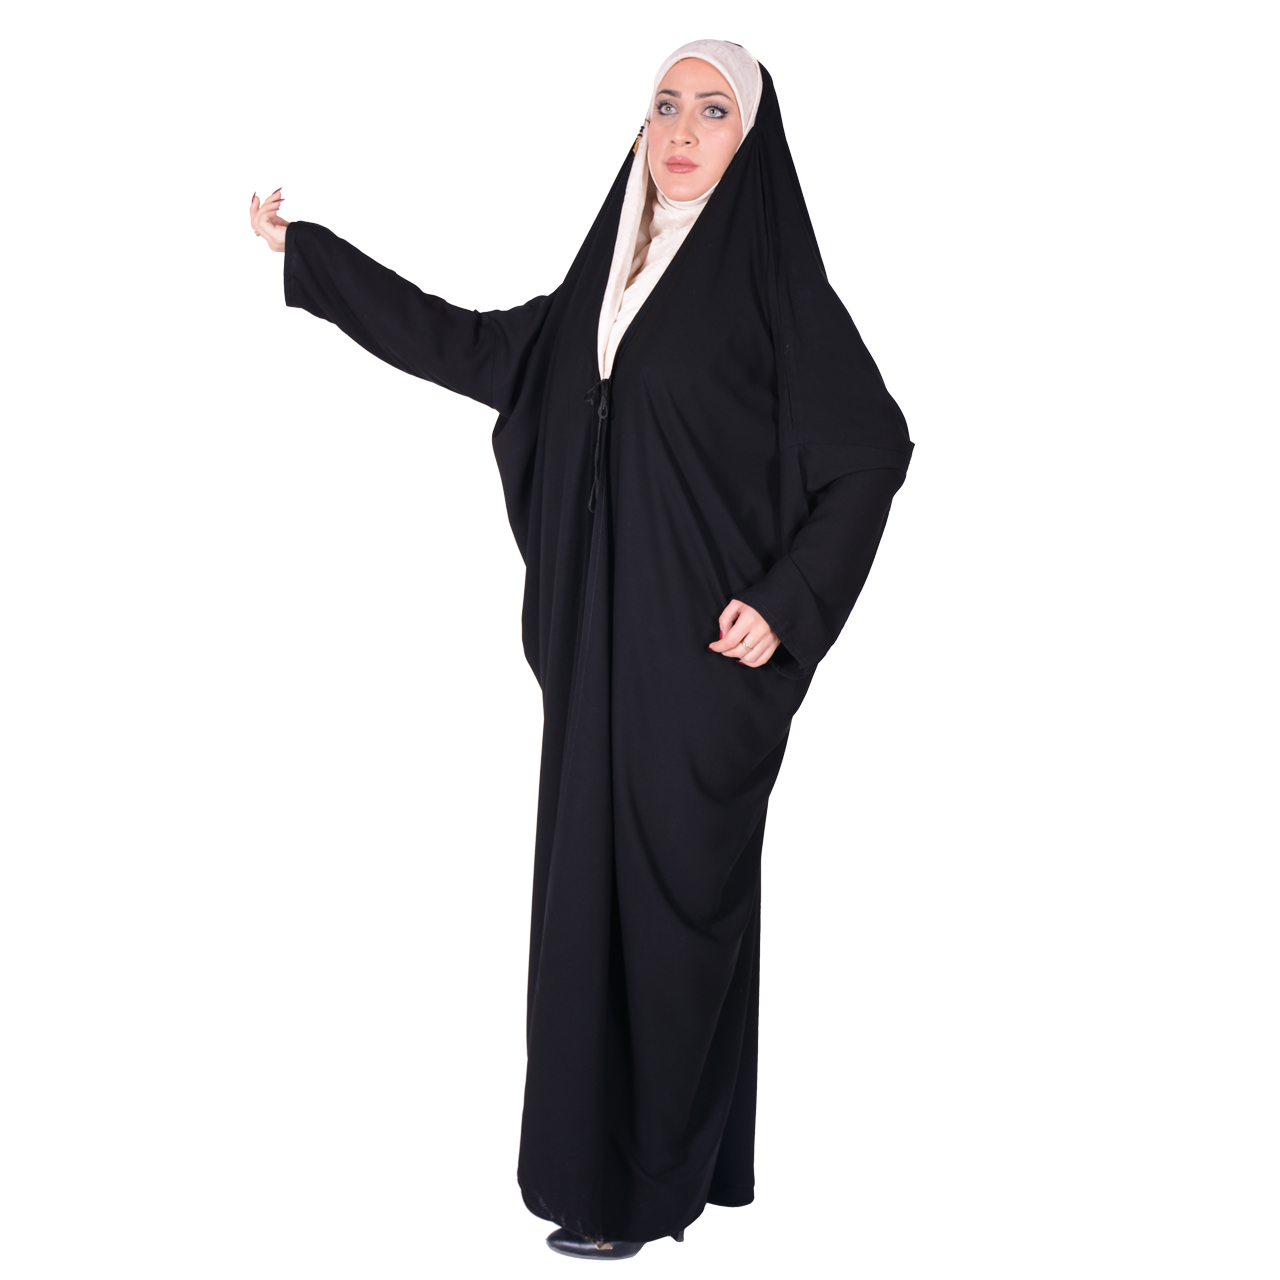 نکته خرید - قیمت روز چادر اماراتی شهر حجاب مدل کرپ کریستال کد 8001 خرید